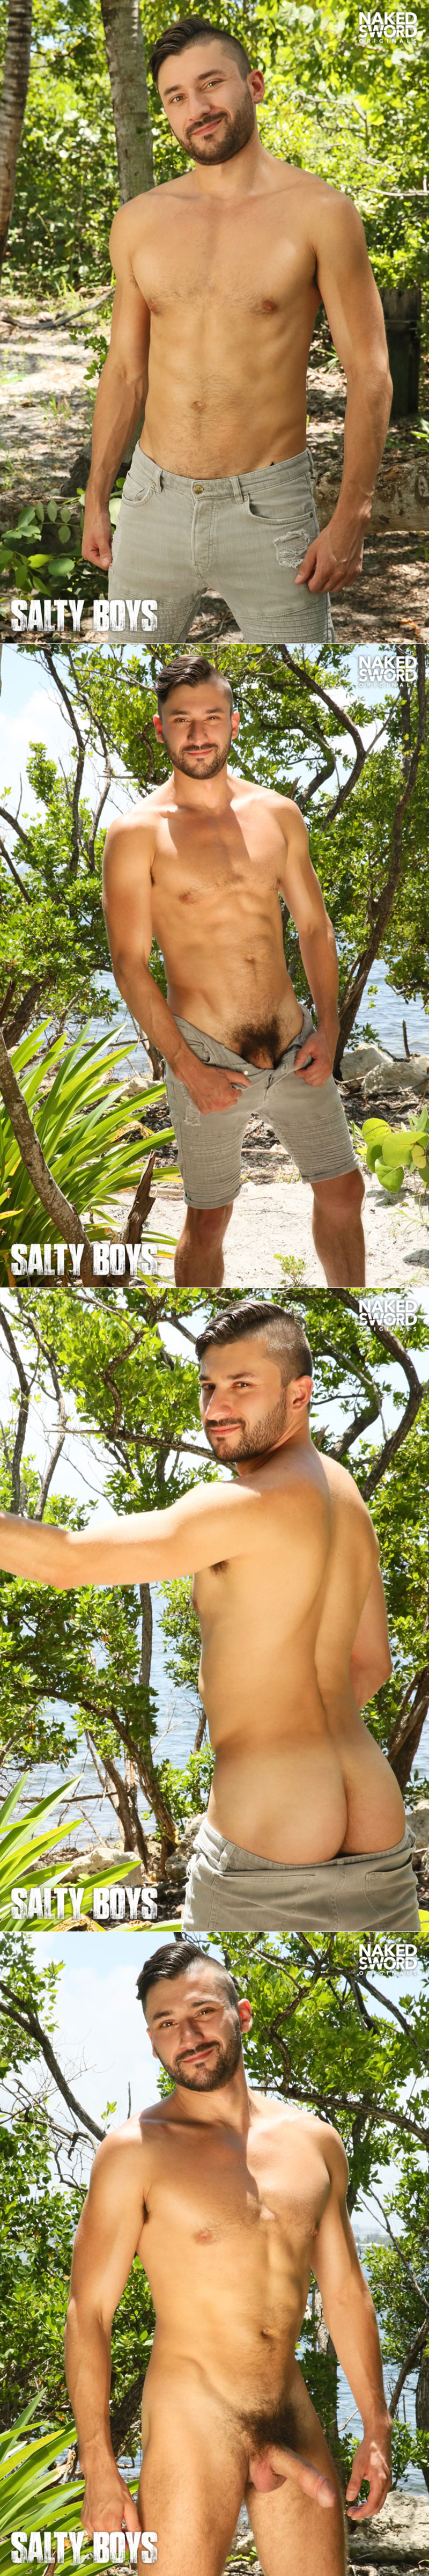 NakedSword Originals: Scott DeMarco barebacks Cesar Rossi in "Salty Boys"